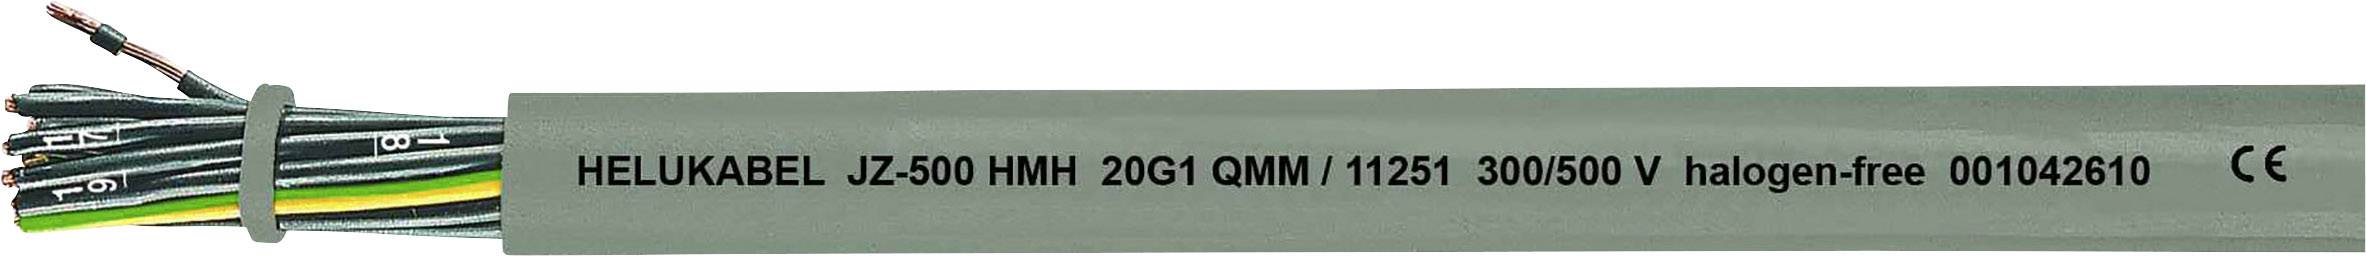 HELUKABEL JZ-500 HMH Steuerleitung 5 G 1.50 mm² Grau 11263-500 500 m